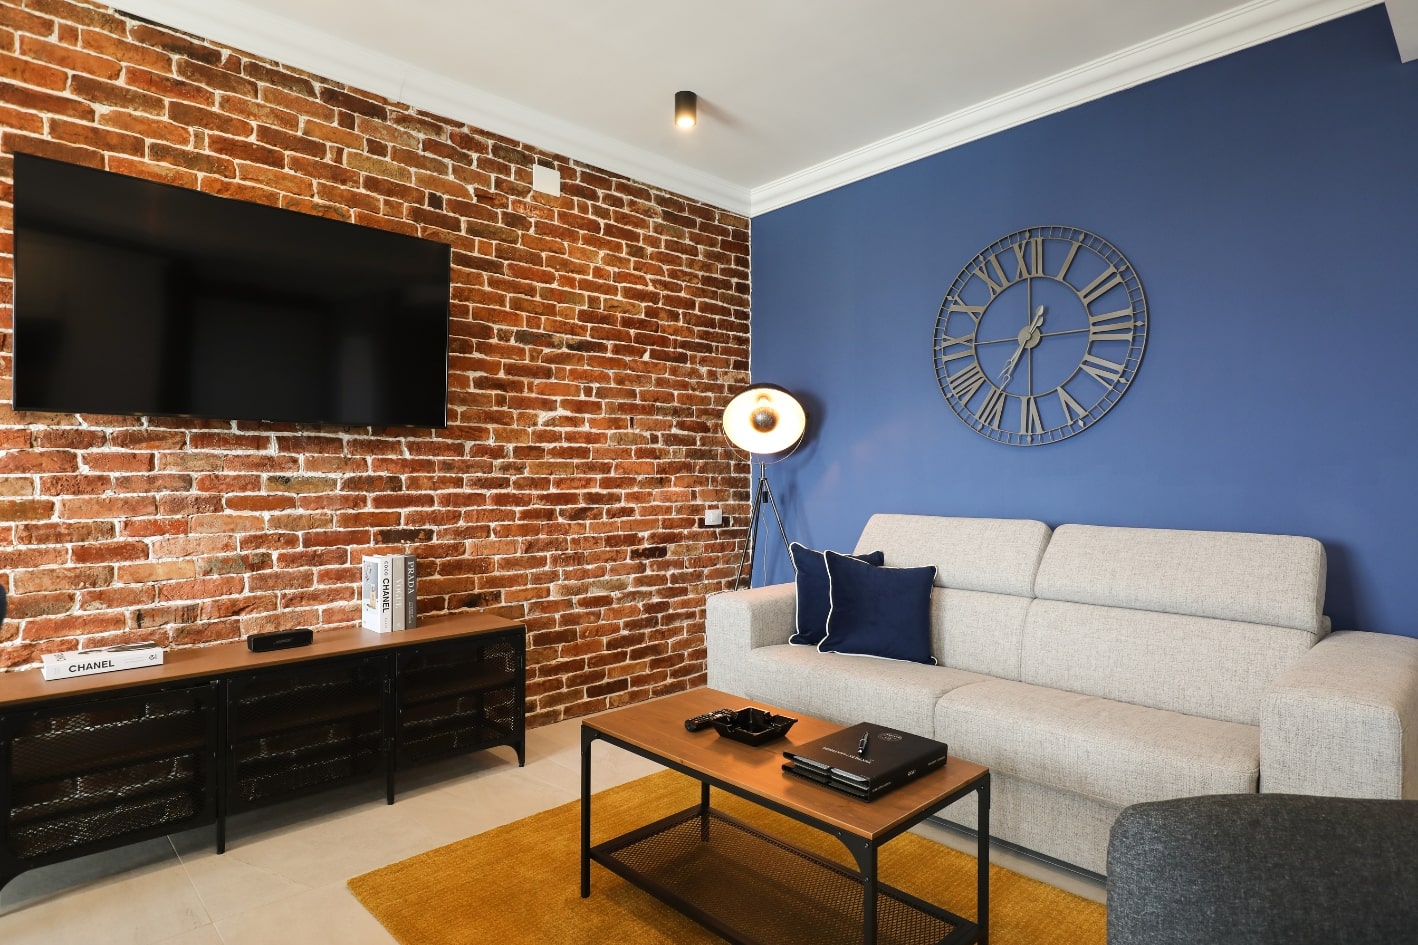 Apartament industrial cu un perete realizat din caramida aparenta si un alt perete de culoare albastra.